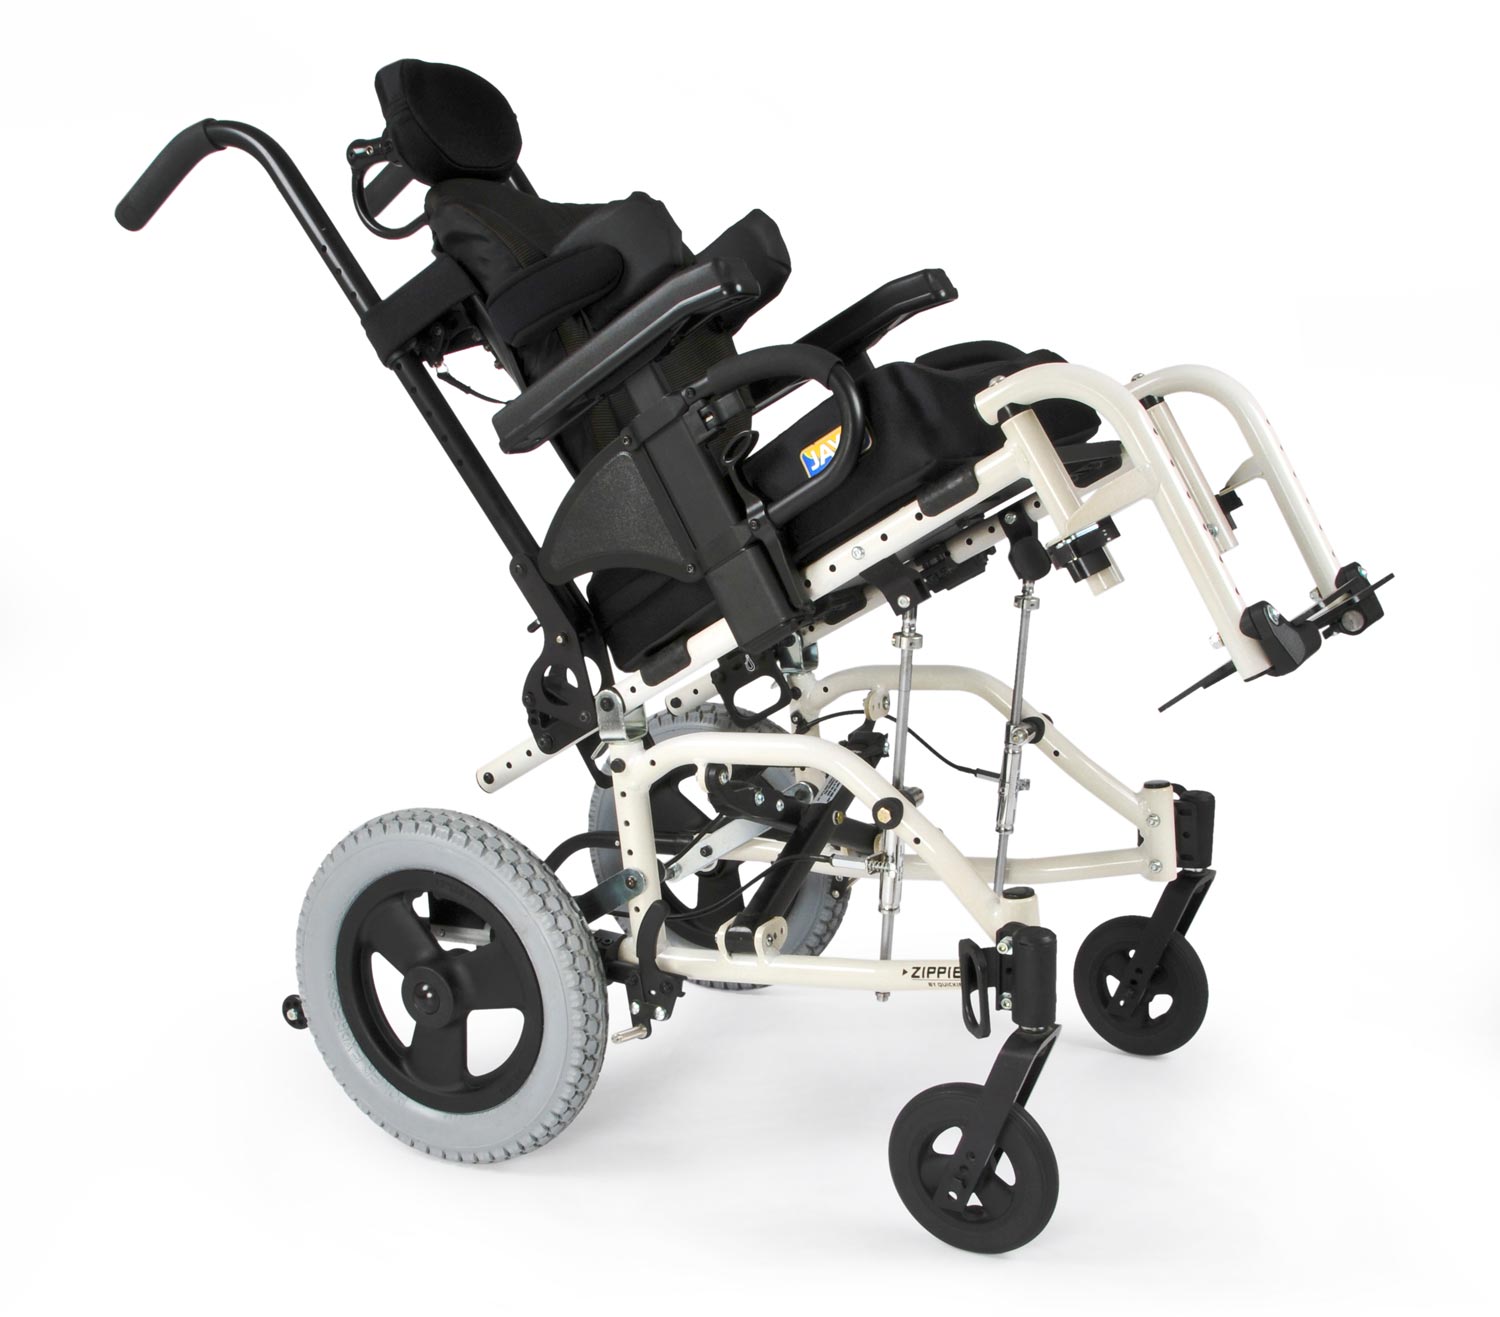 https://www.sunrisemedical.com/getattachment/manual-wheelchairs/Zippie/tilt-in-space-wheelchairs/TS/Product-Features/1-45%C2%B0-Traditional-Tilt-Technology/ZippieTS_Feature1_size.jpg.aspx?lang=en-US&width=1500&height=1317&ext=.jpg%}?width=960